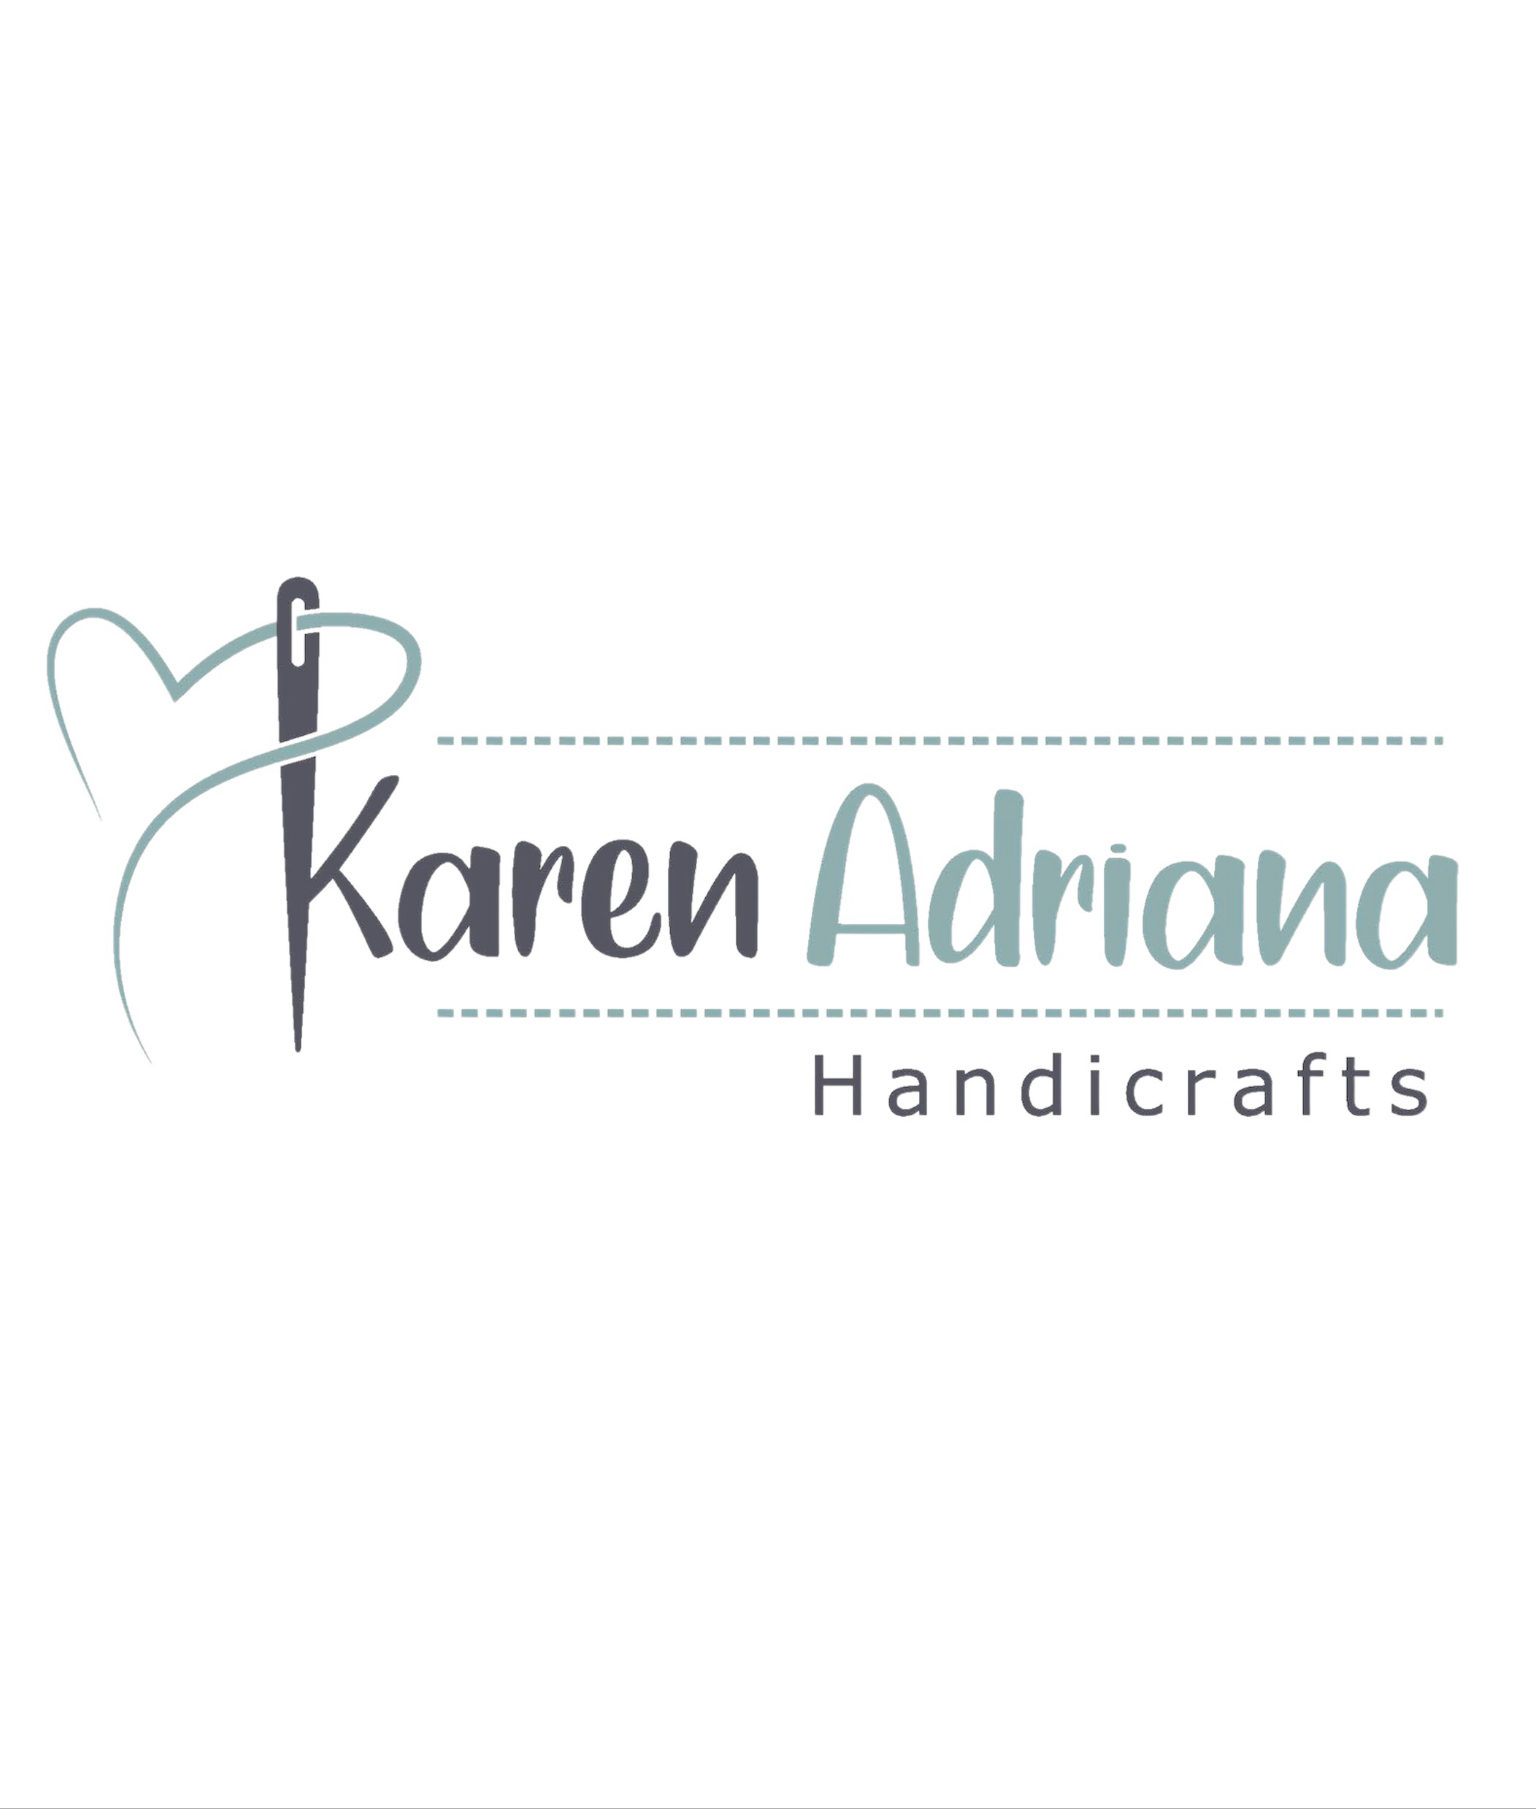 Karen Adriana Handicrafts